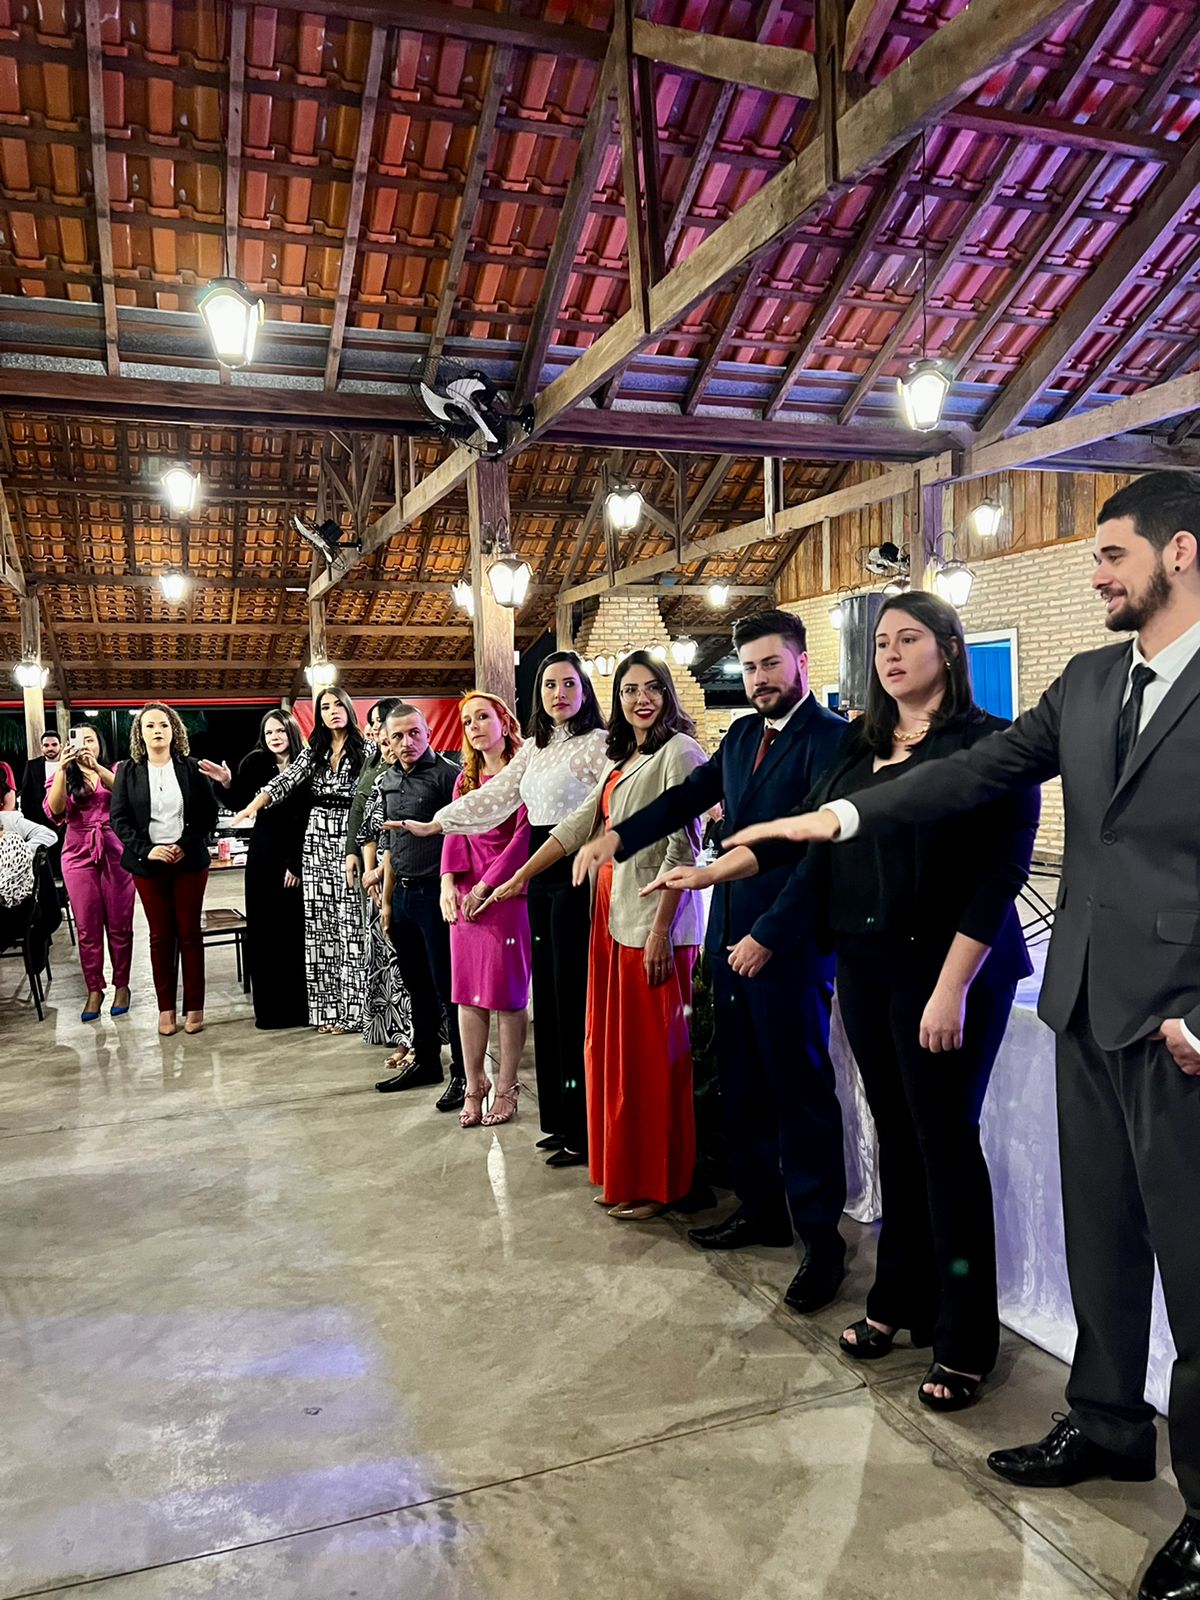 OAB Mirandópolis realiza evento para homenagear novos advogados e comemorar 40 anos da subseção local